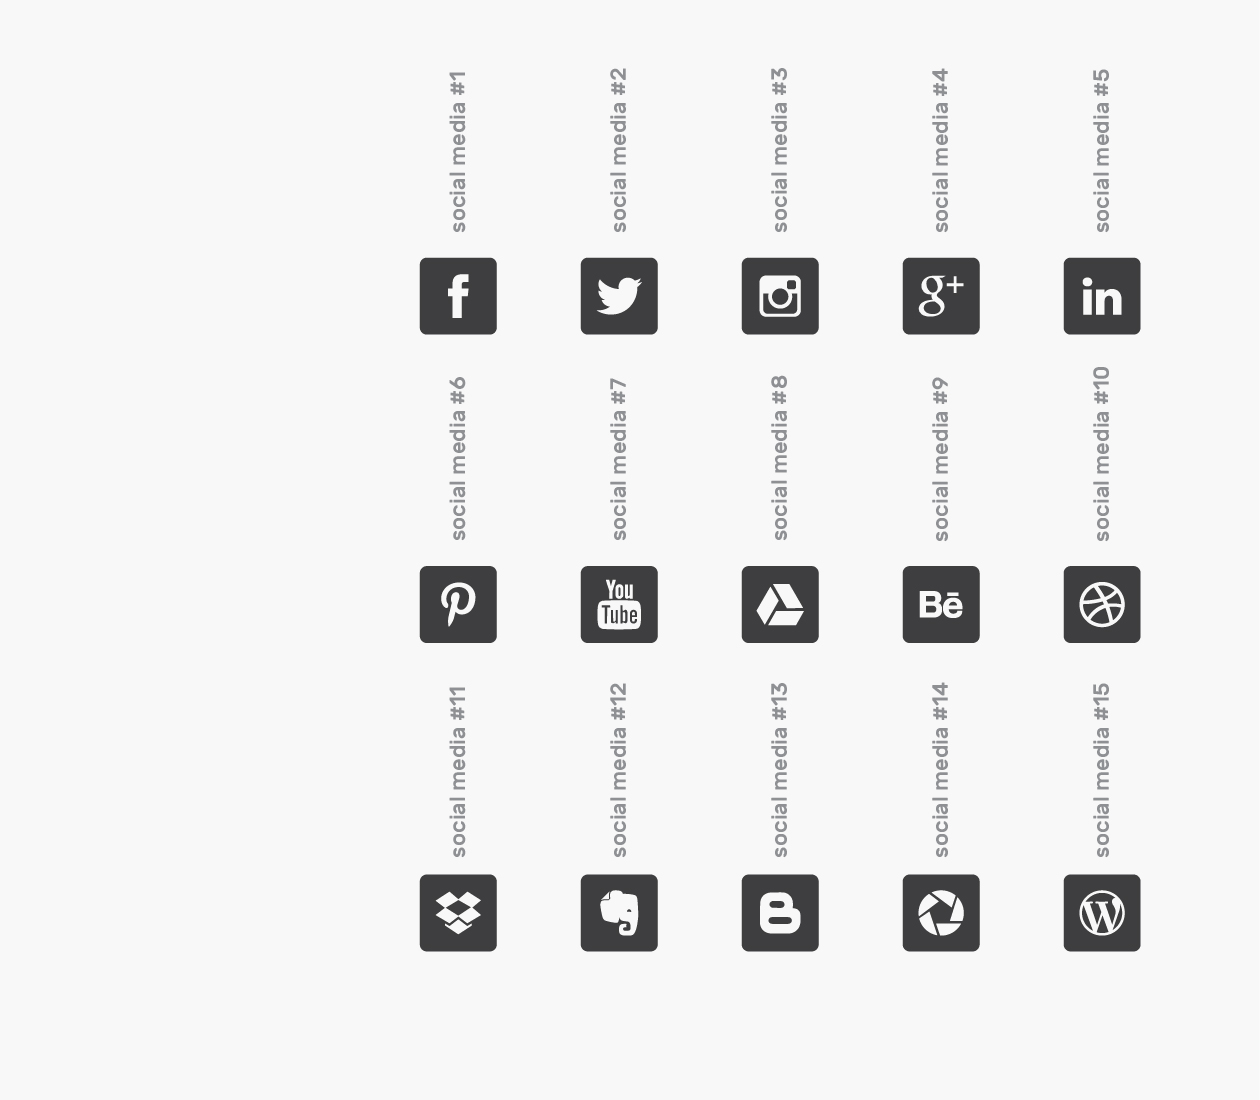 可自定义品牌颜色网页&图形设计彩色矢量素材库精选图标 Branded Color Icons插图(12)